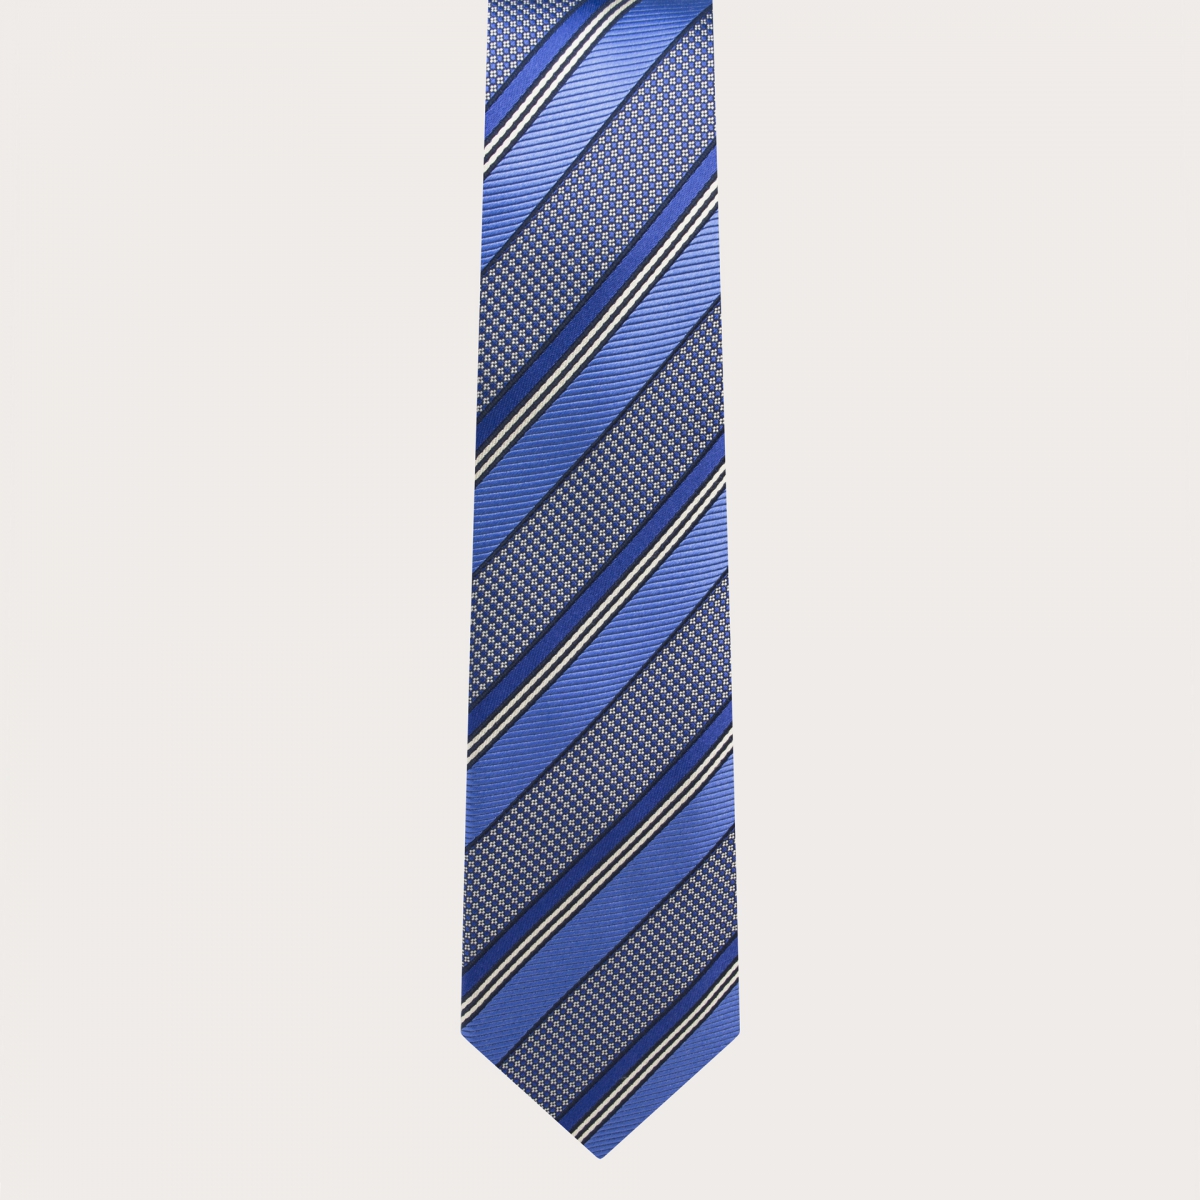 Cravate de cérémonie en soie jacquard à motif régimentaire bleu